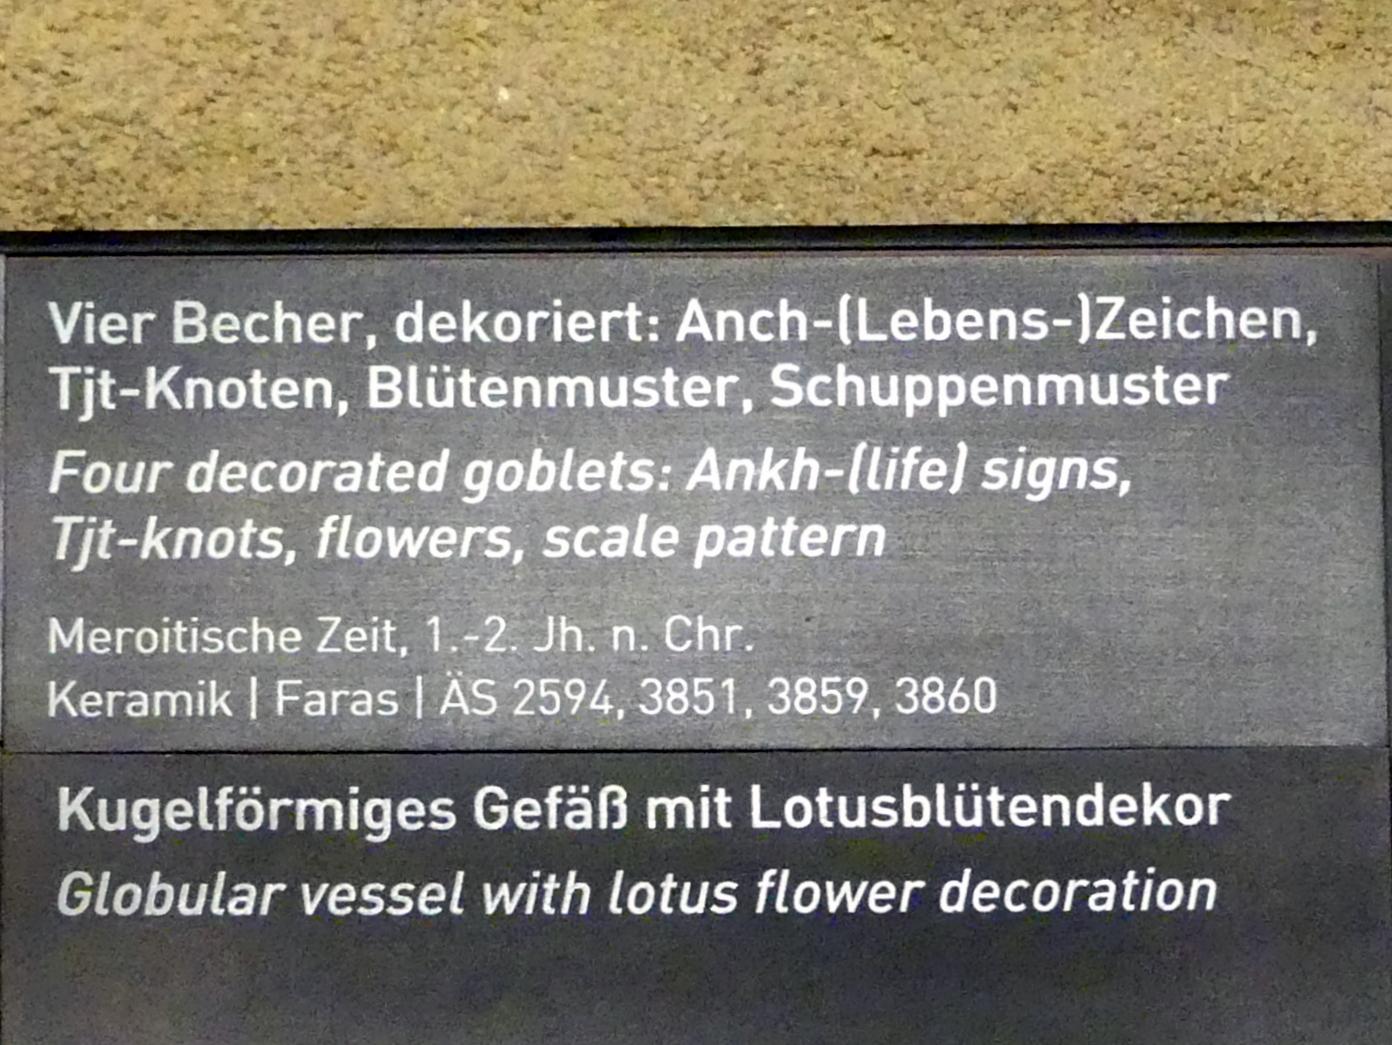 Becher mit Anch-(Lebens-)Zeichen-Dekor, Meroitische Zeit, 200 v. Chr. - 500 n. Chr., 1 - 200, Bild 2/2